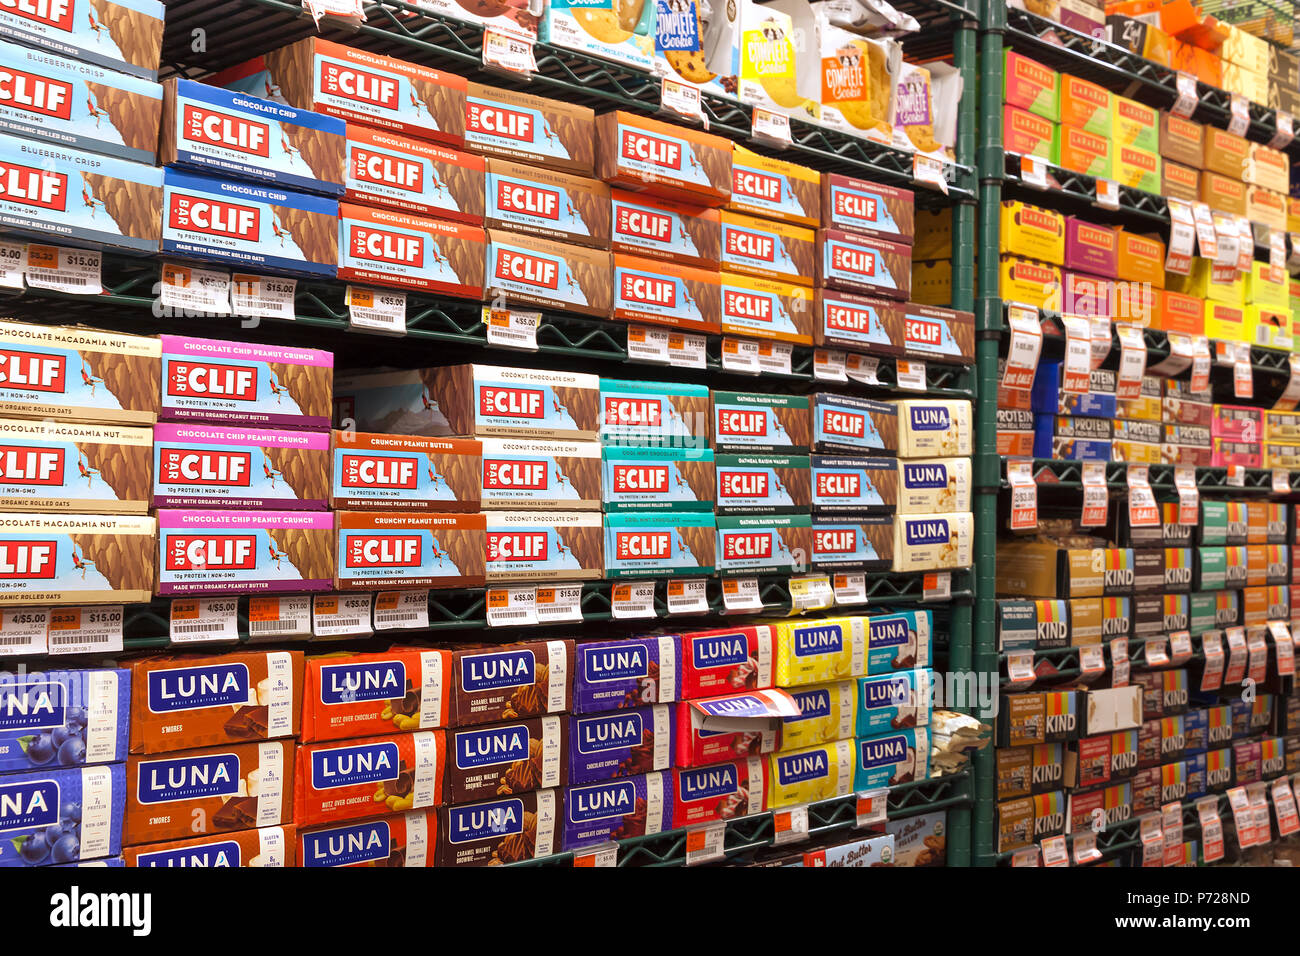 Popular energy bars for sale on supermarket store shelves. Stock Photo